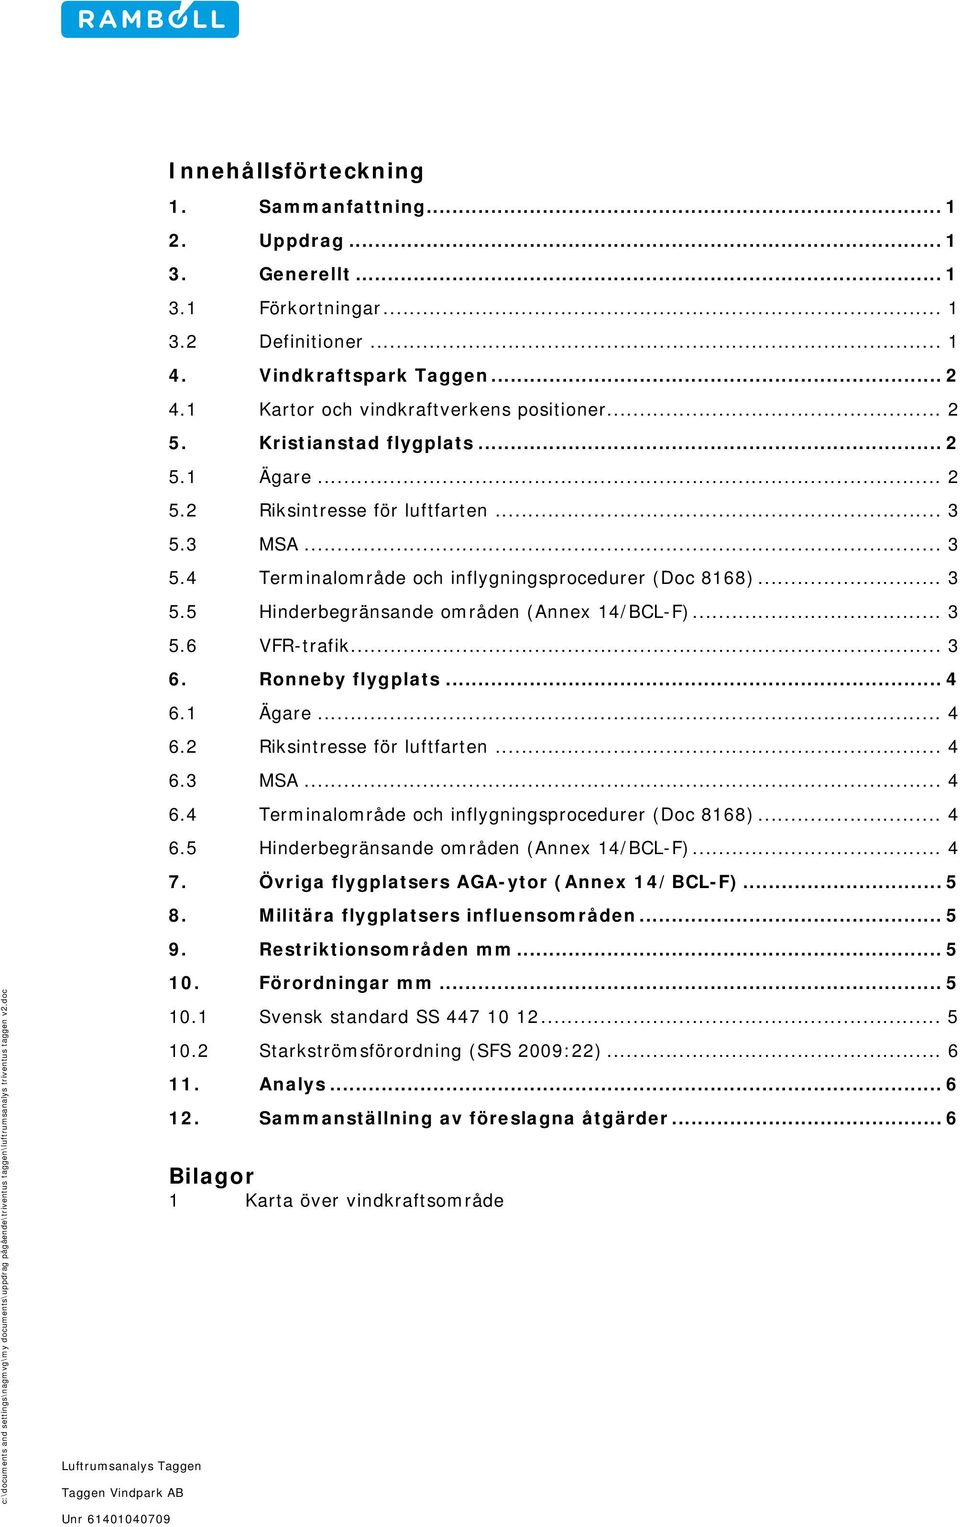 .. 3 5.6 VFR-trafik... 3 6. Ronneby flygplats... 4 6.1 Ägare... 4 6.2 Riksintresse för luftfarten... 4 6.3 MSA... 4 6.4 Terminalområde och inflygningsprocedurer (Doc 8168)... 4 6.5 Hinderbegränsande områden (Annex 14/BCL-F).